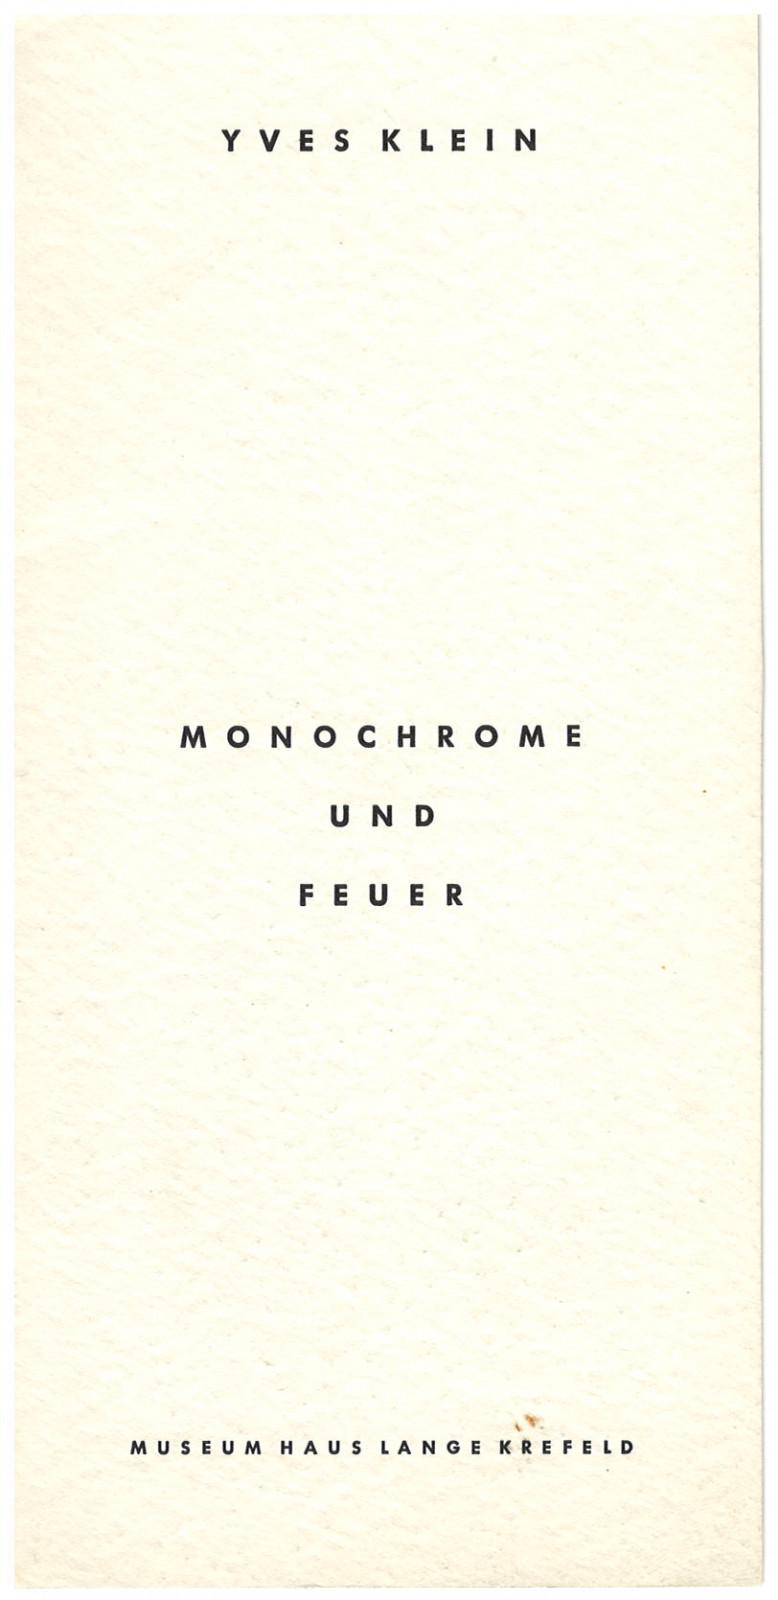 Carton d'invitation à l'exposition "Yves Klein Monochrome und Feuer" au Museum Haus Lange de Krefeld